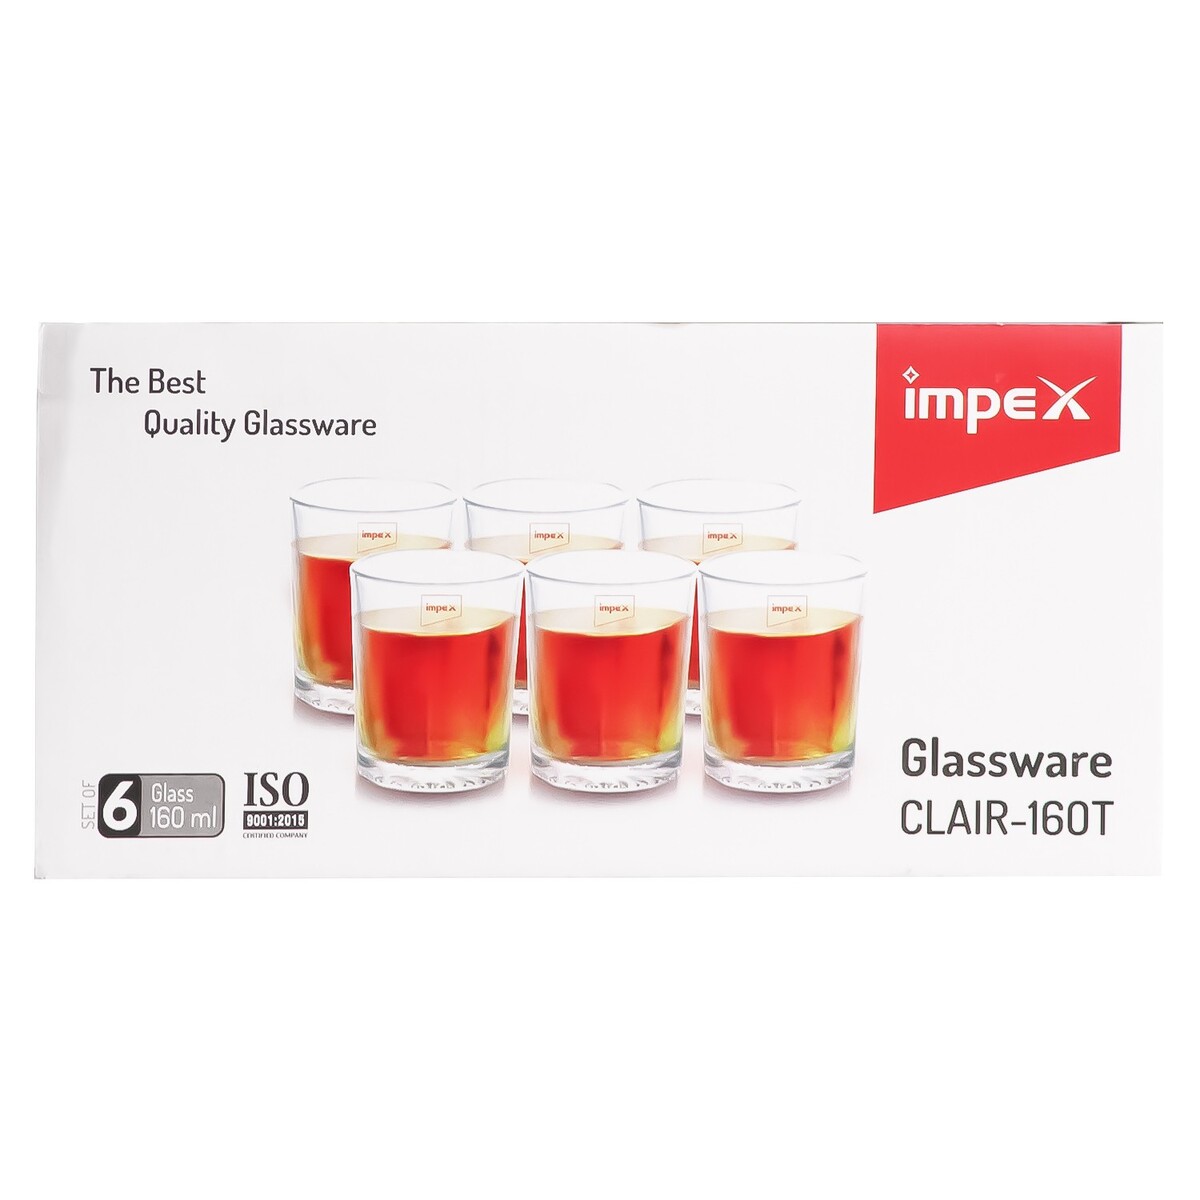 Impex Glassware Clair 160T